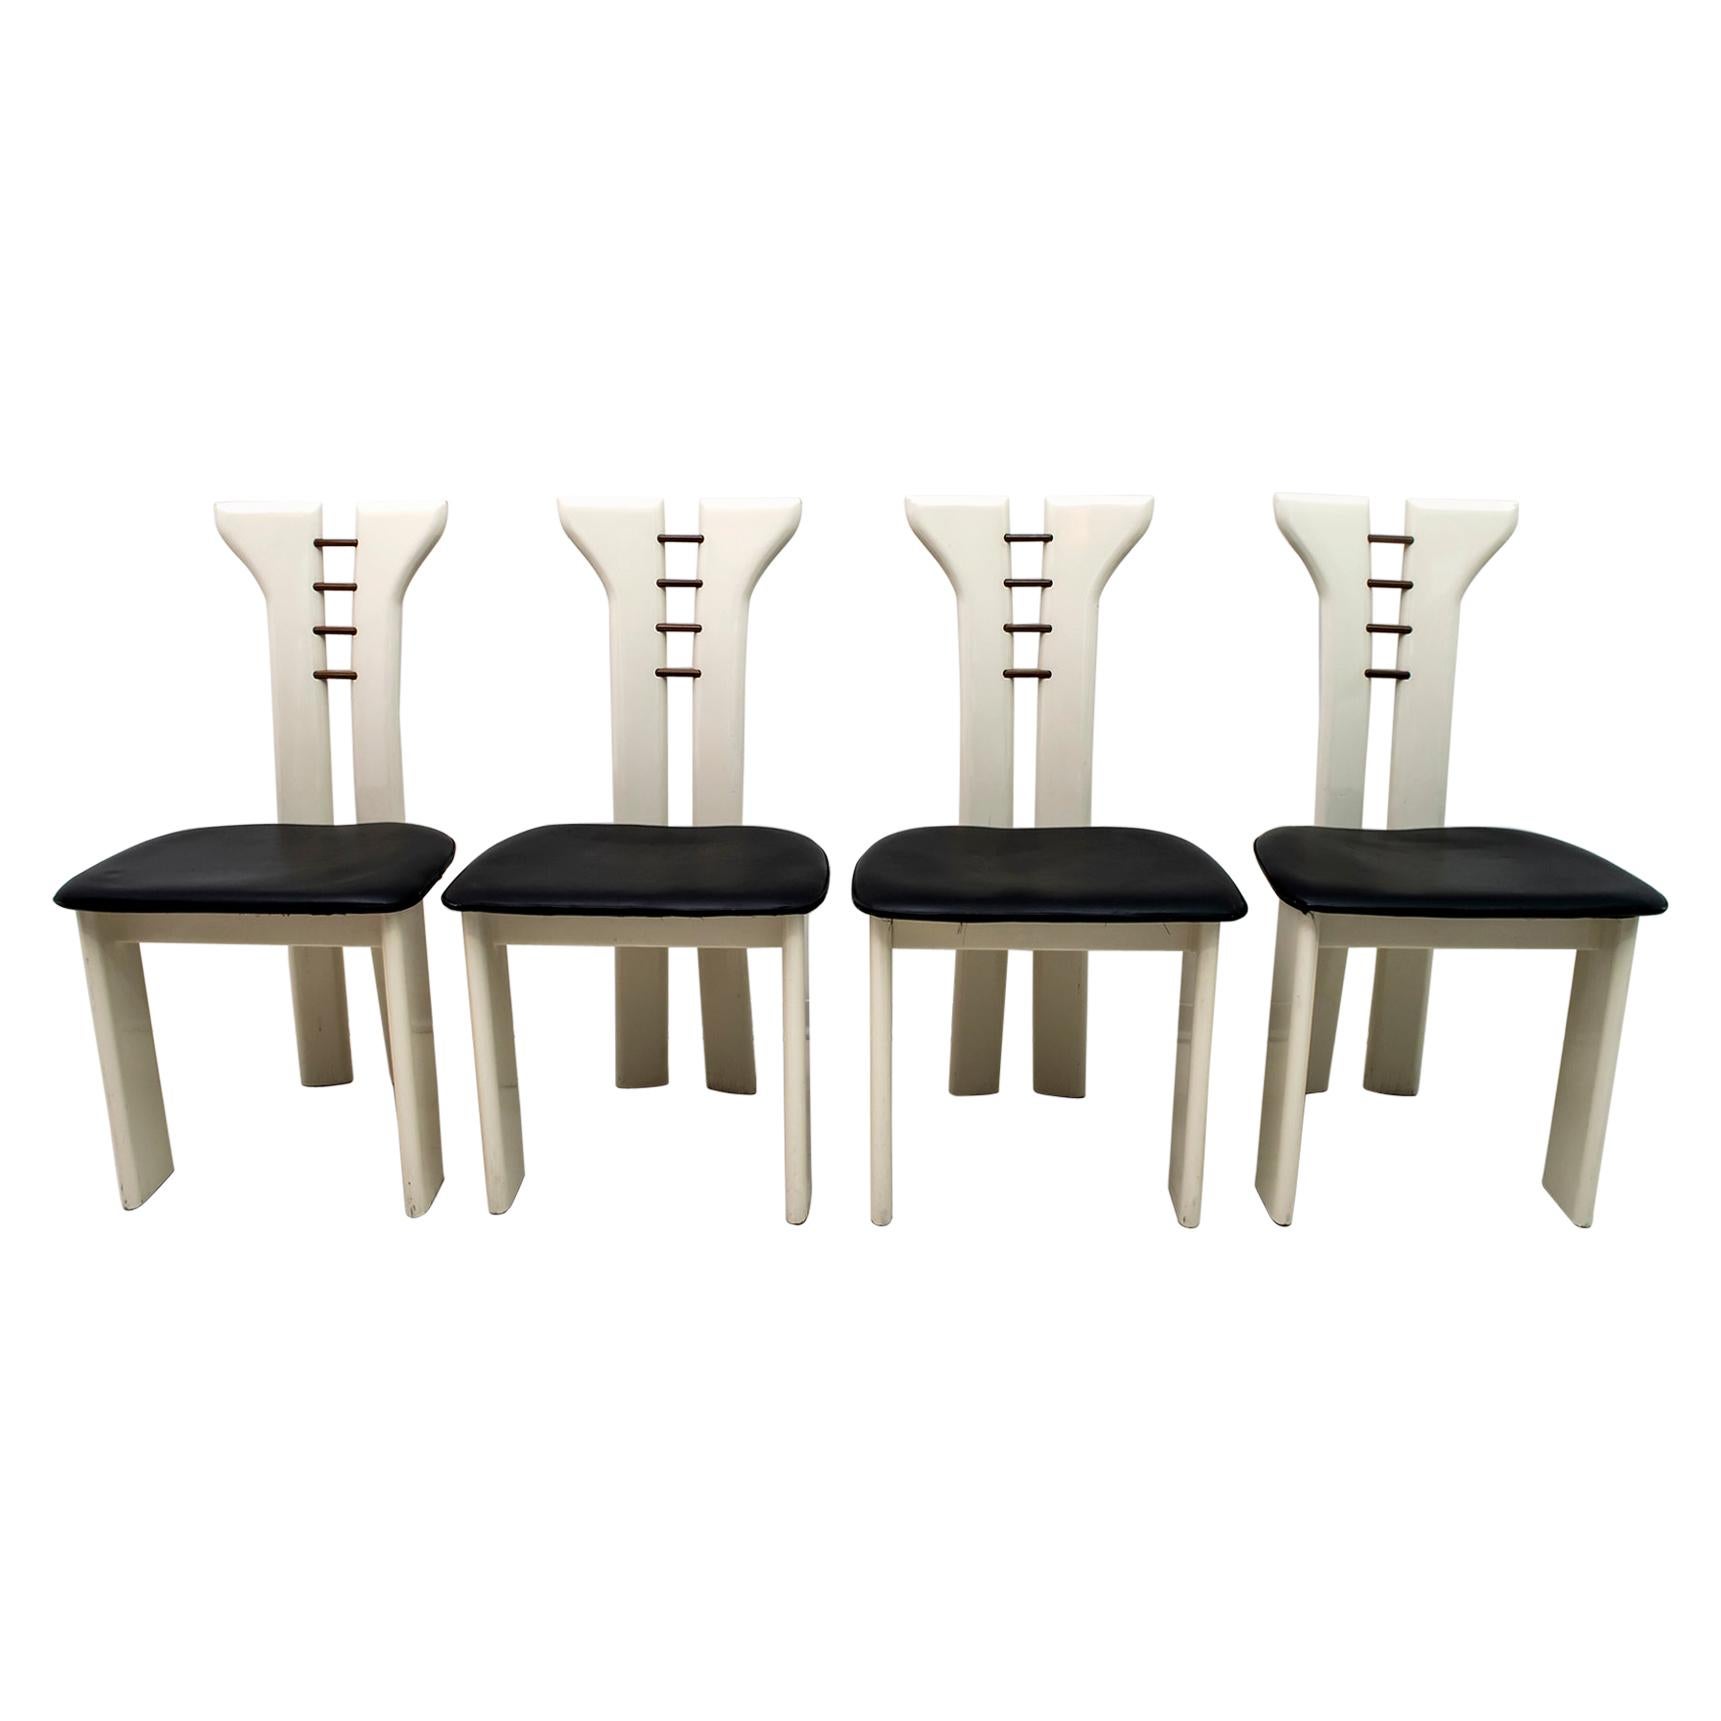 Pierre Cardin Elfenbeinfarben lackierte Stühle mit hölzernen Details und schwarzem Leder:: 1979